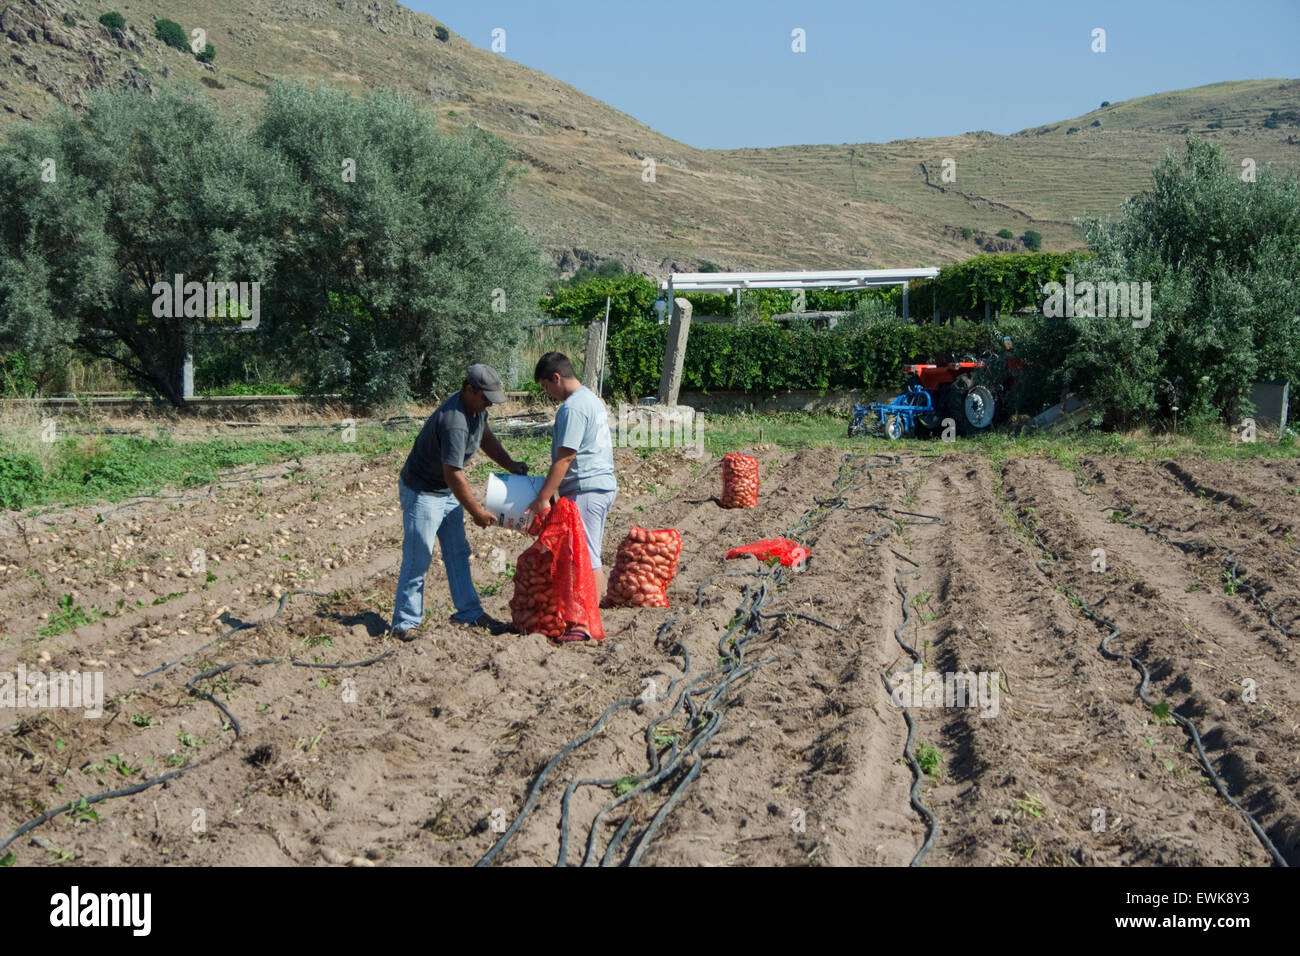 Les agriculteurs grecs de recueillir et d'emballage des pommes de terre biologiques frais en rouge (sacs) sackloths. Thanos village, île de Lemnos, en Grèce. Banque D'Images